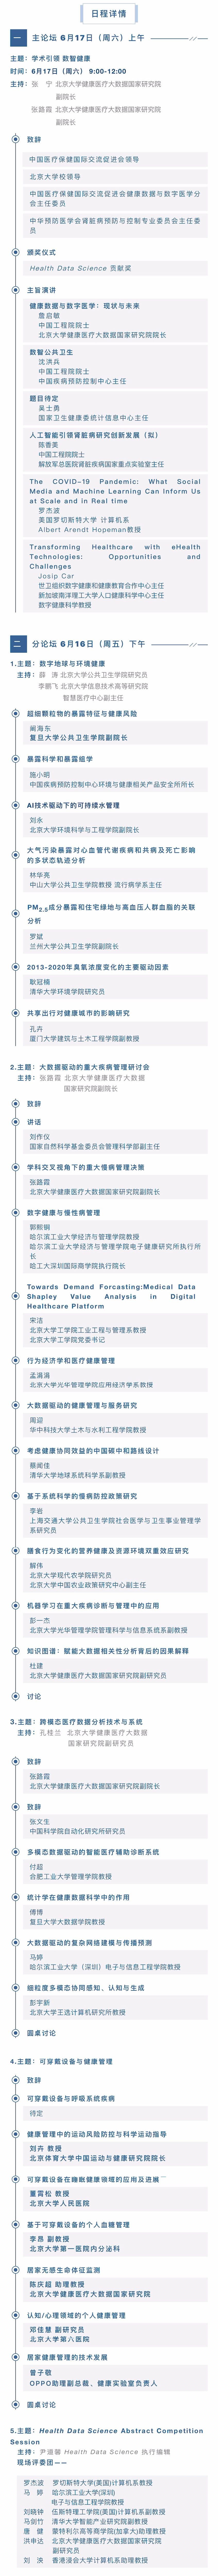 2023北京健康医疗大数据论坛